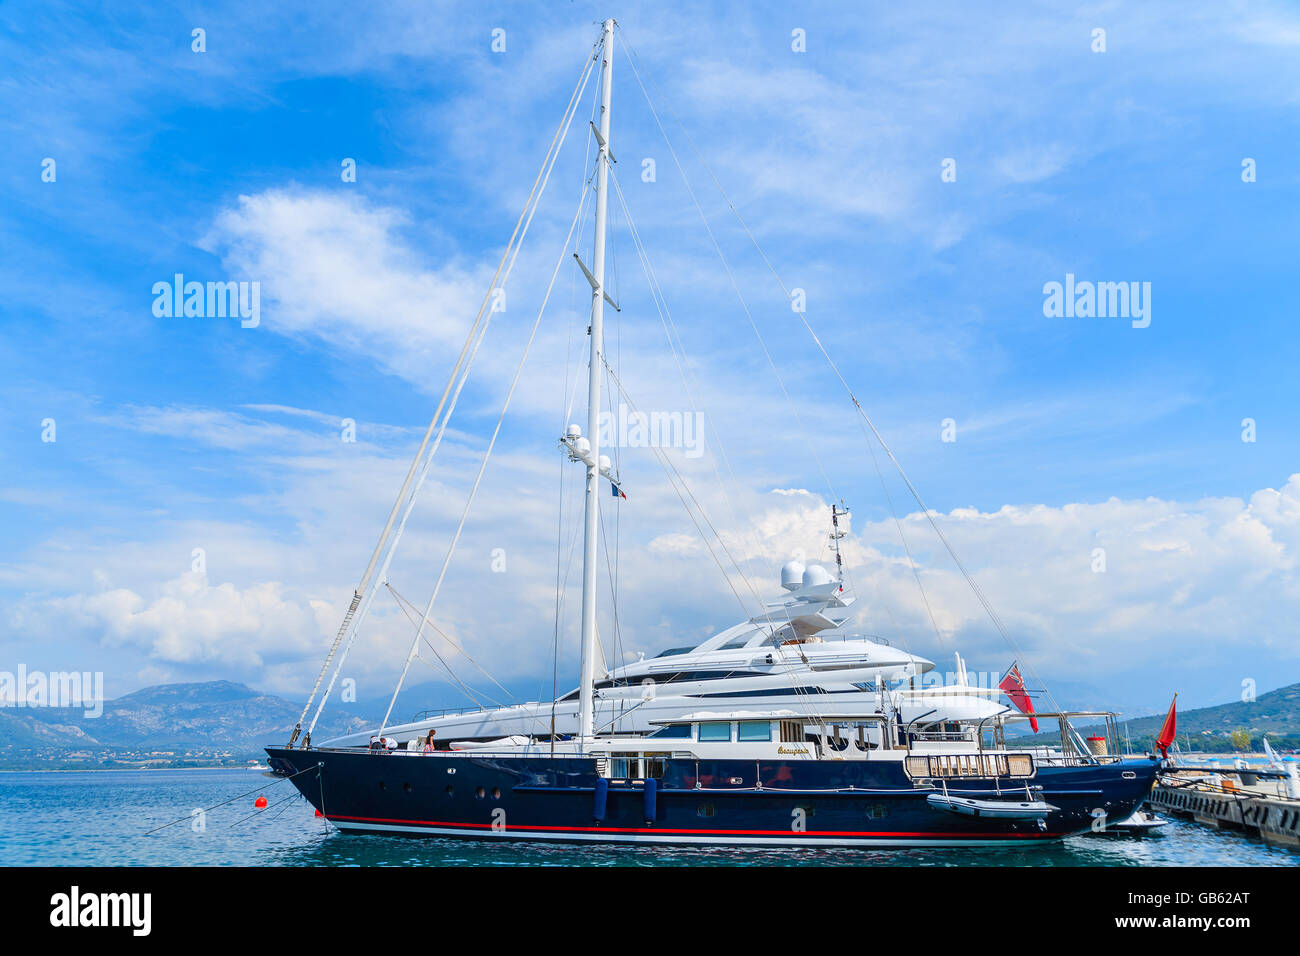 Il porto di Calvi, Isola di Corsica - giu 29, 2015: lusso barche a vela sul mare contro bellissimo cielo con nuvole bianche su soleggiate giornate estive. Foto Stock